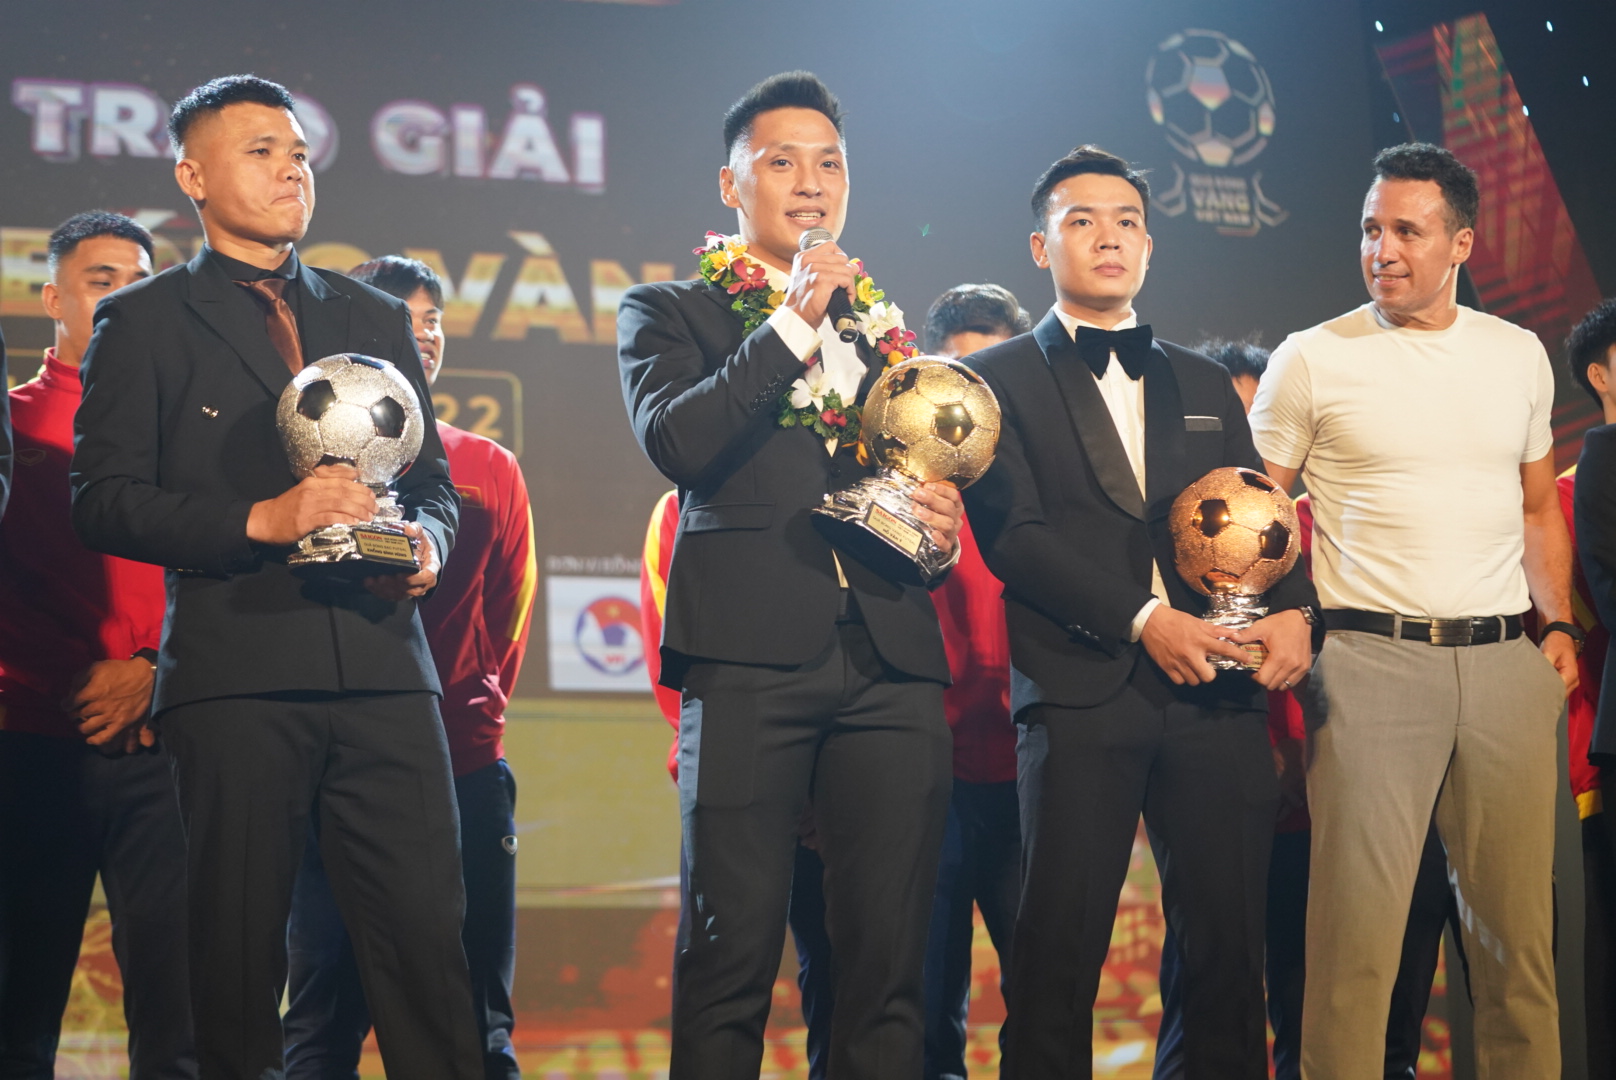 Trực tiếp Gala trao giải Quả bóng vàng Việt Nam 2022: Văn Quyết đăng quang, Huỳnh Như lập kỷ lục - Ảnh 3.